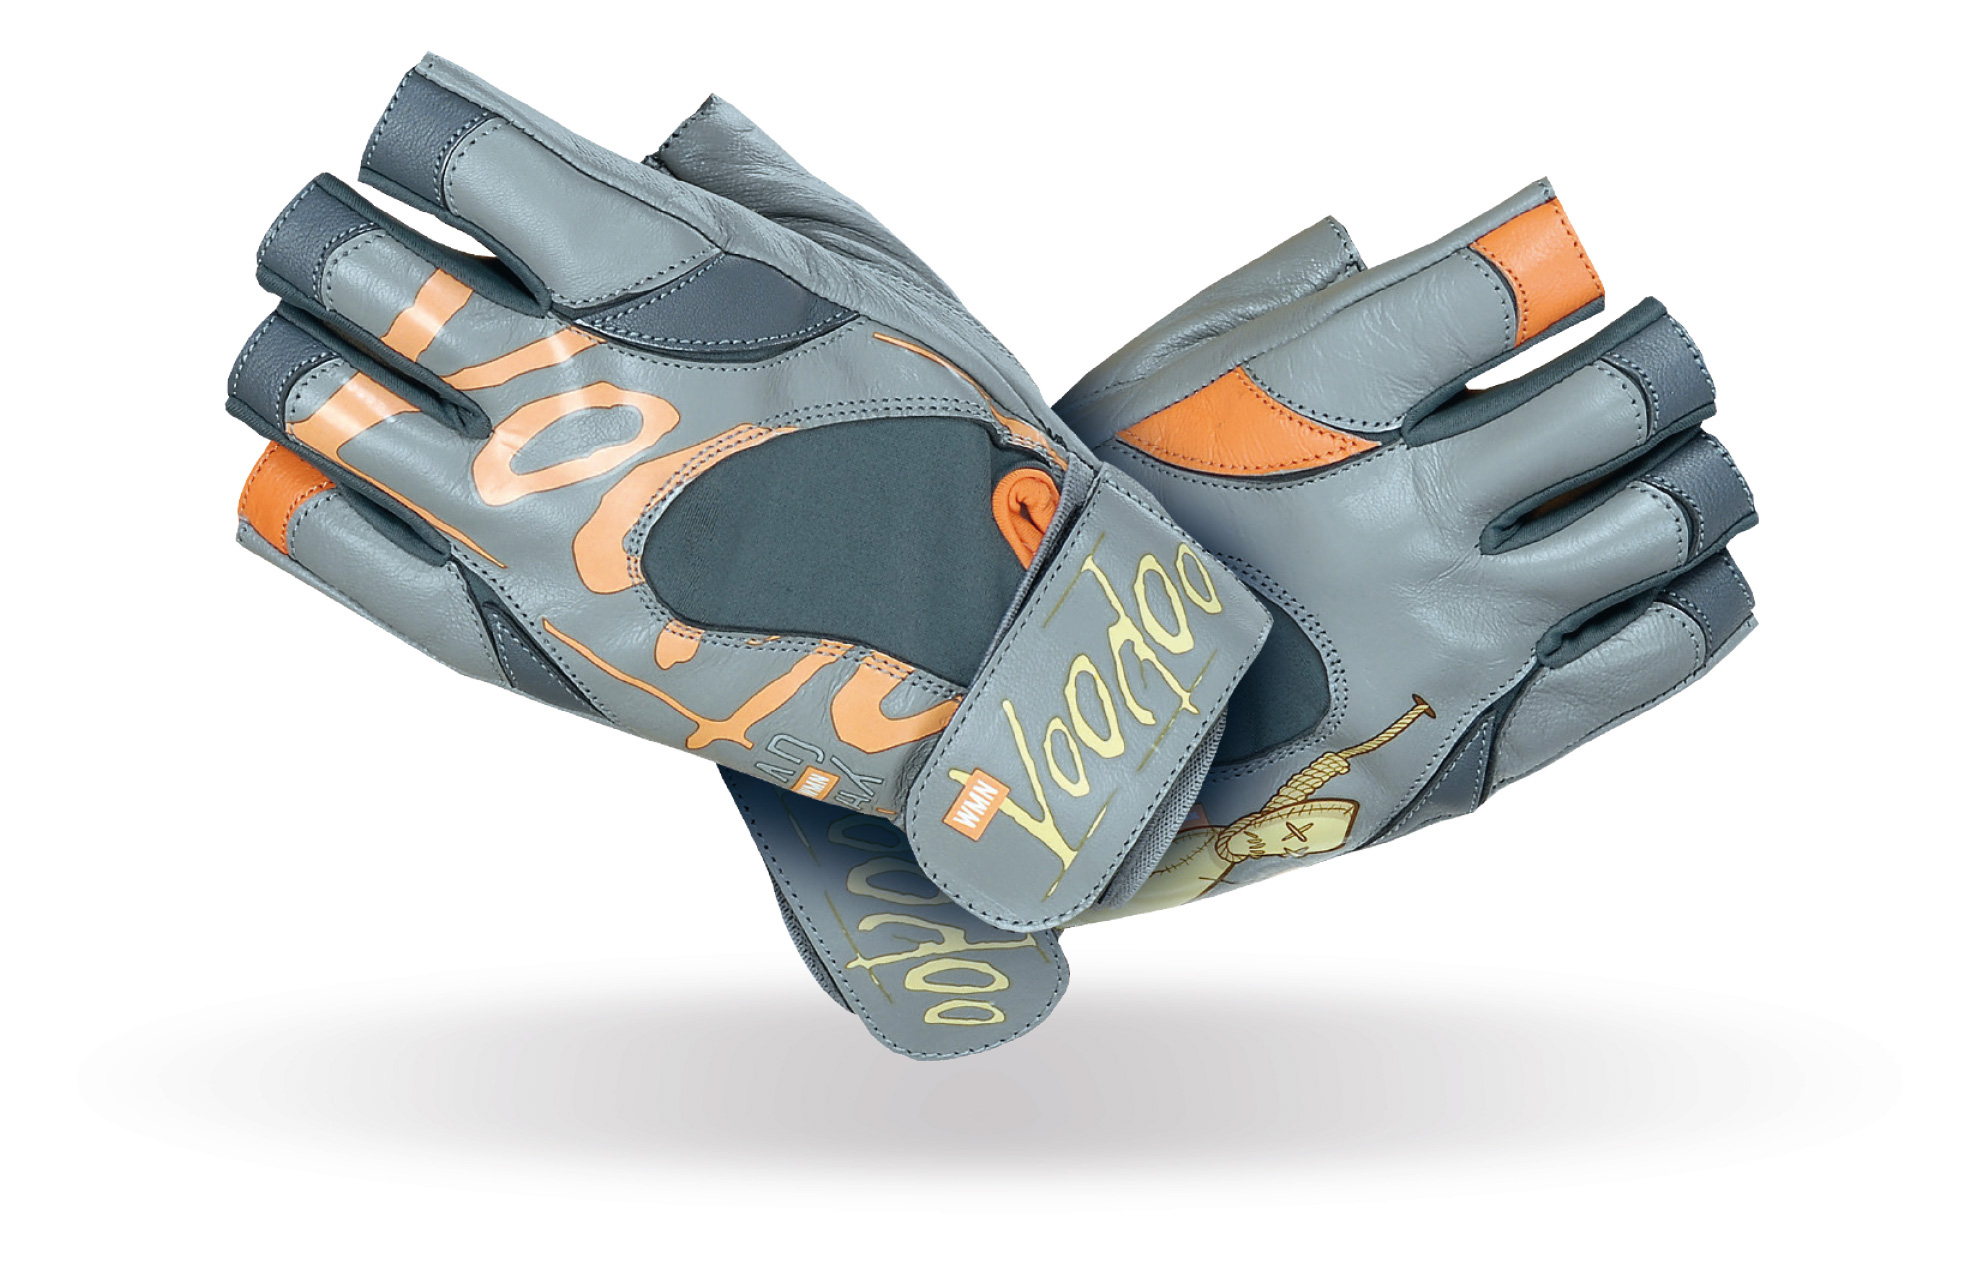 MAD MAX MFG-921 voodoo orange gloves